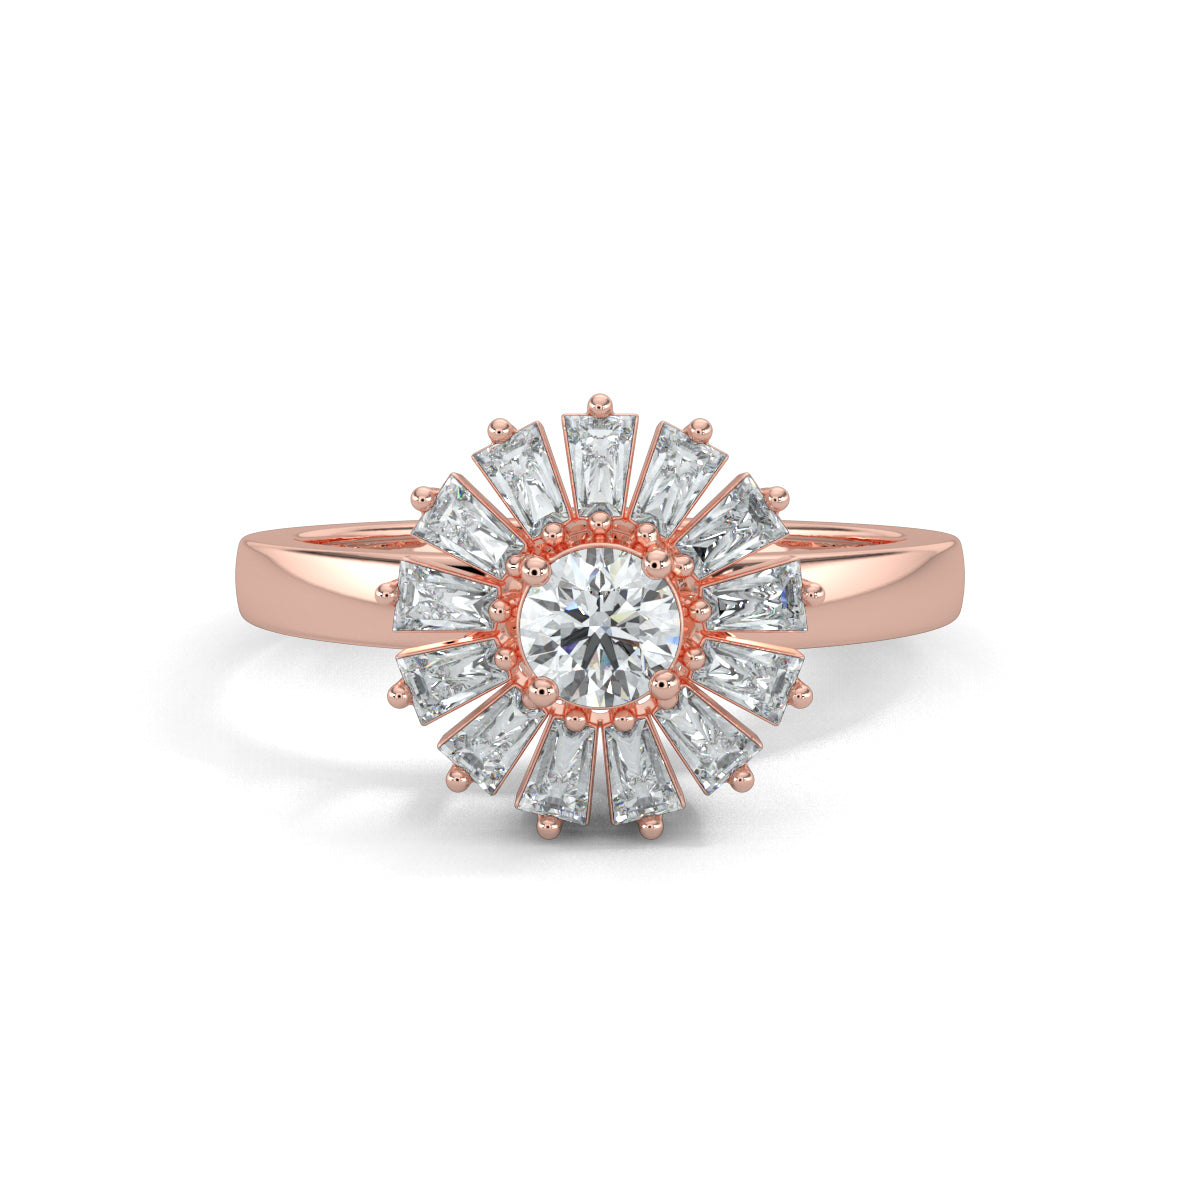 Rose Gold, Diamond Ring, Natural diamond ring, Lab-grown diamond ring, enchantia floral ring, round diamond ring, baguette diamond ring, floral diamond ring, classic diamond ring, elegant diamond ring, versatile diamond ring